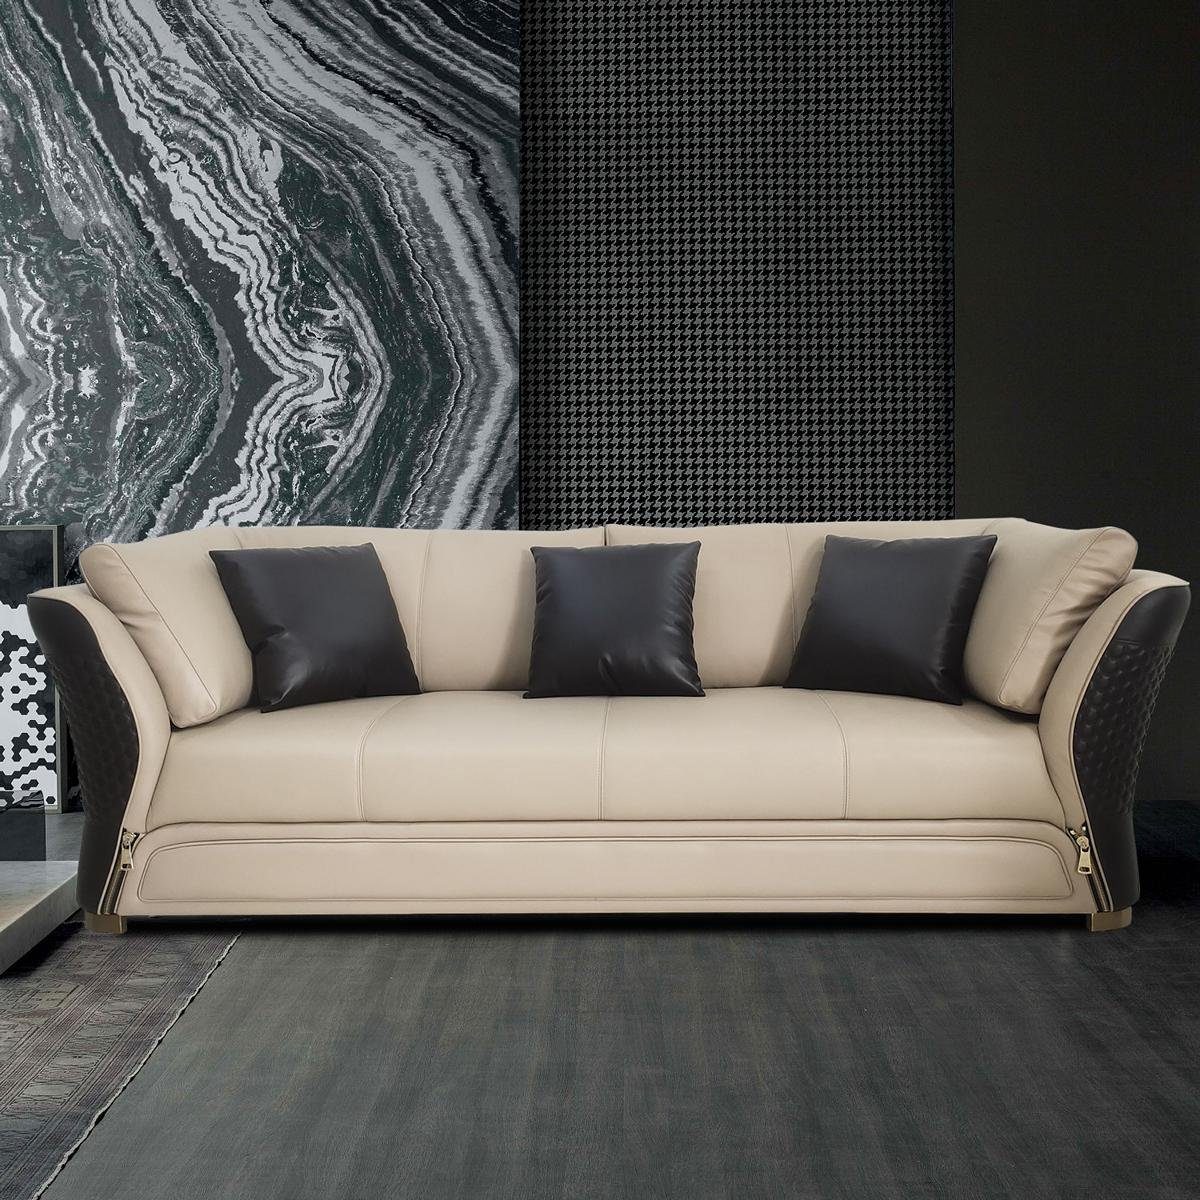 JVmoebel Wohnzimmer-Set, ledersofa couchen Weiß/Schwarz design sofagarnitur couch wohnlandschaft sitzer 321